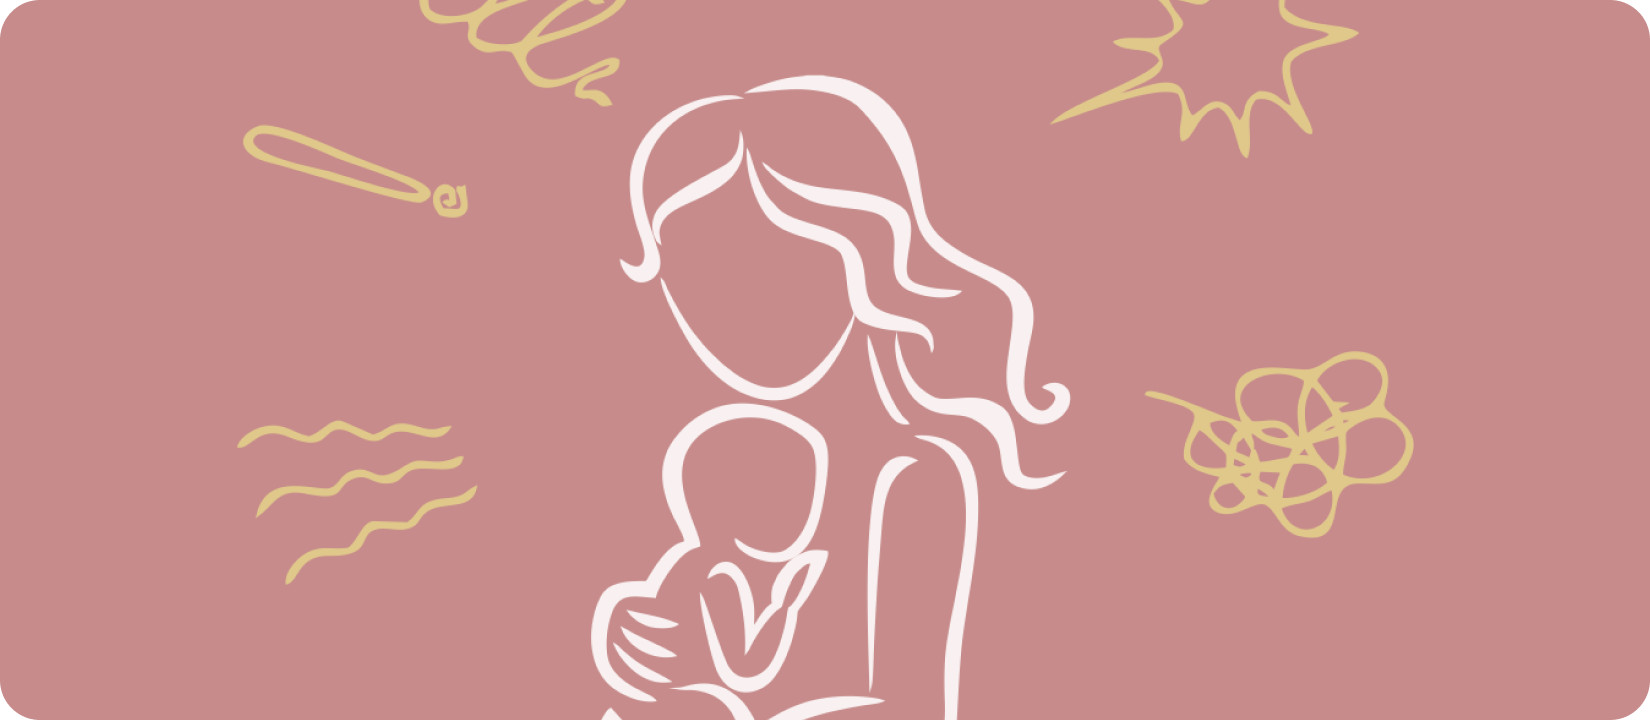 Что делать, если мужчина охладел во время беременности - узнайте на Nutricia club